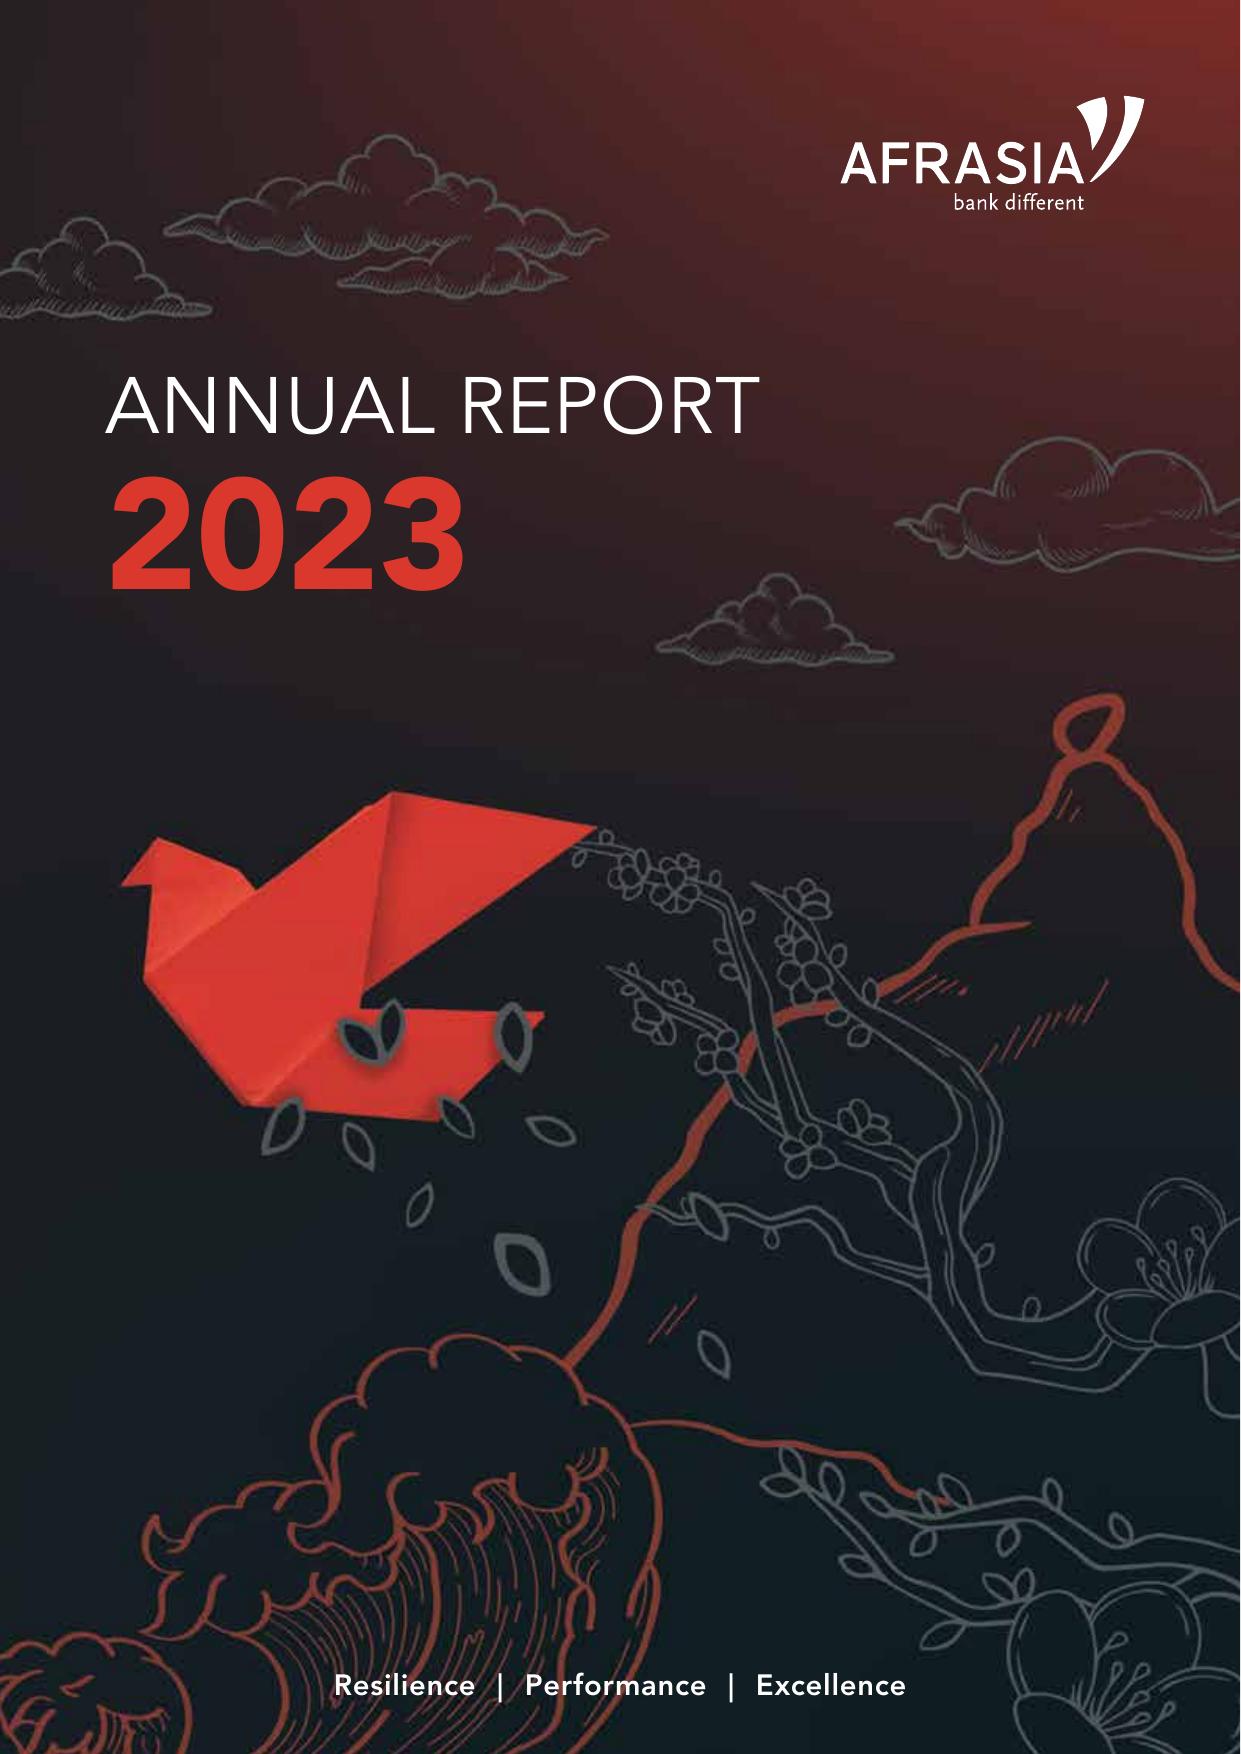 MOMENTUMCU 2023 Annual Report